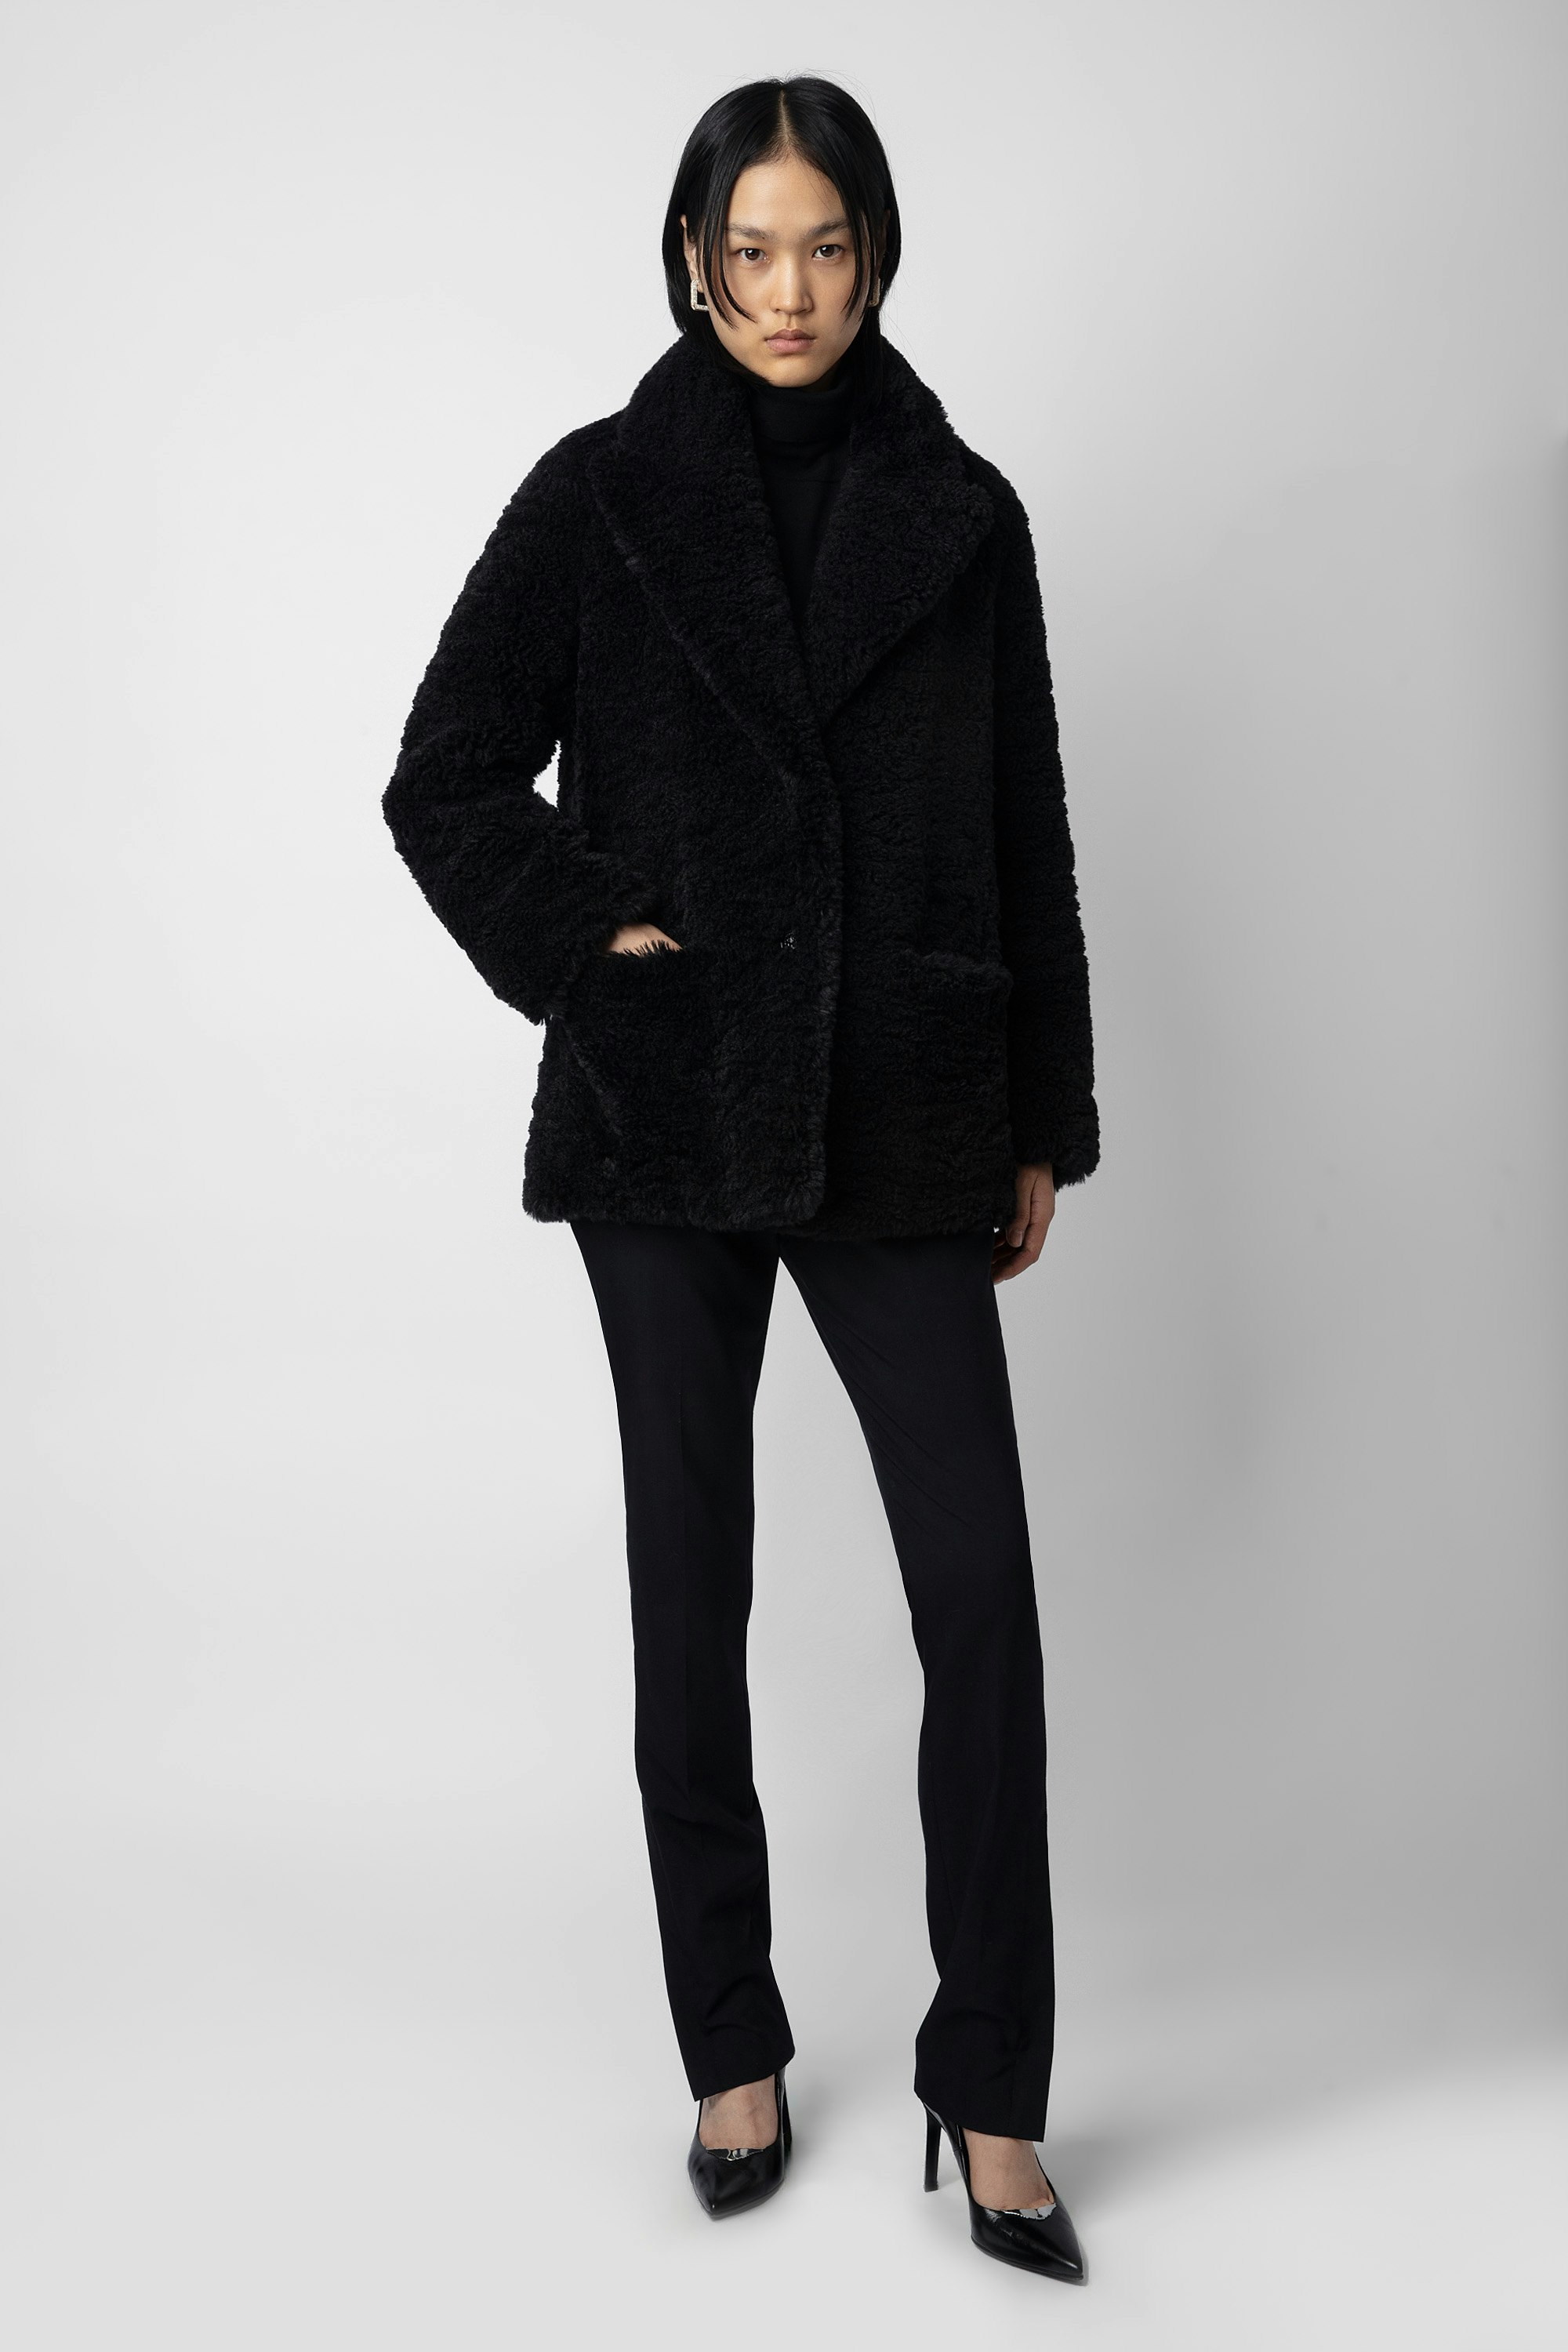 Fleur Soft Curly Coat - Women’s black faux fur coat.